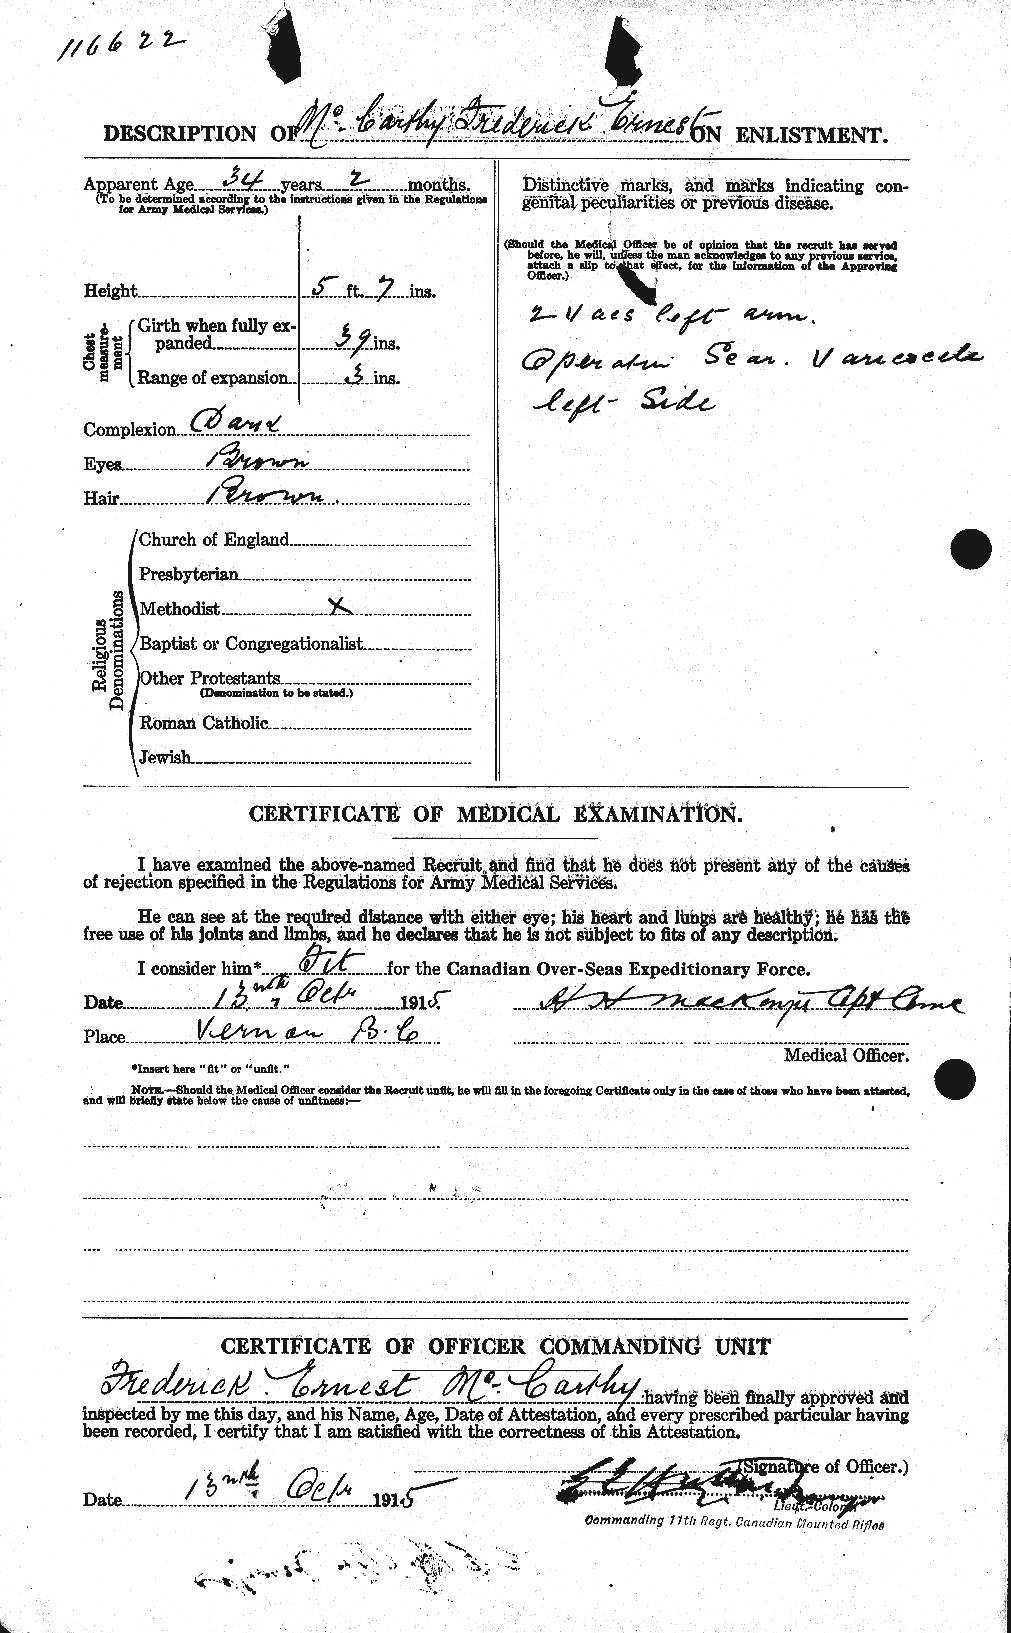 Dossiers du Personnel de la Première Guerre mondiale - CEC 132234b